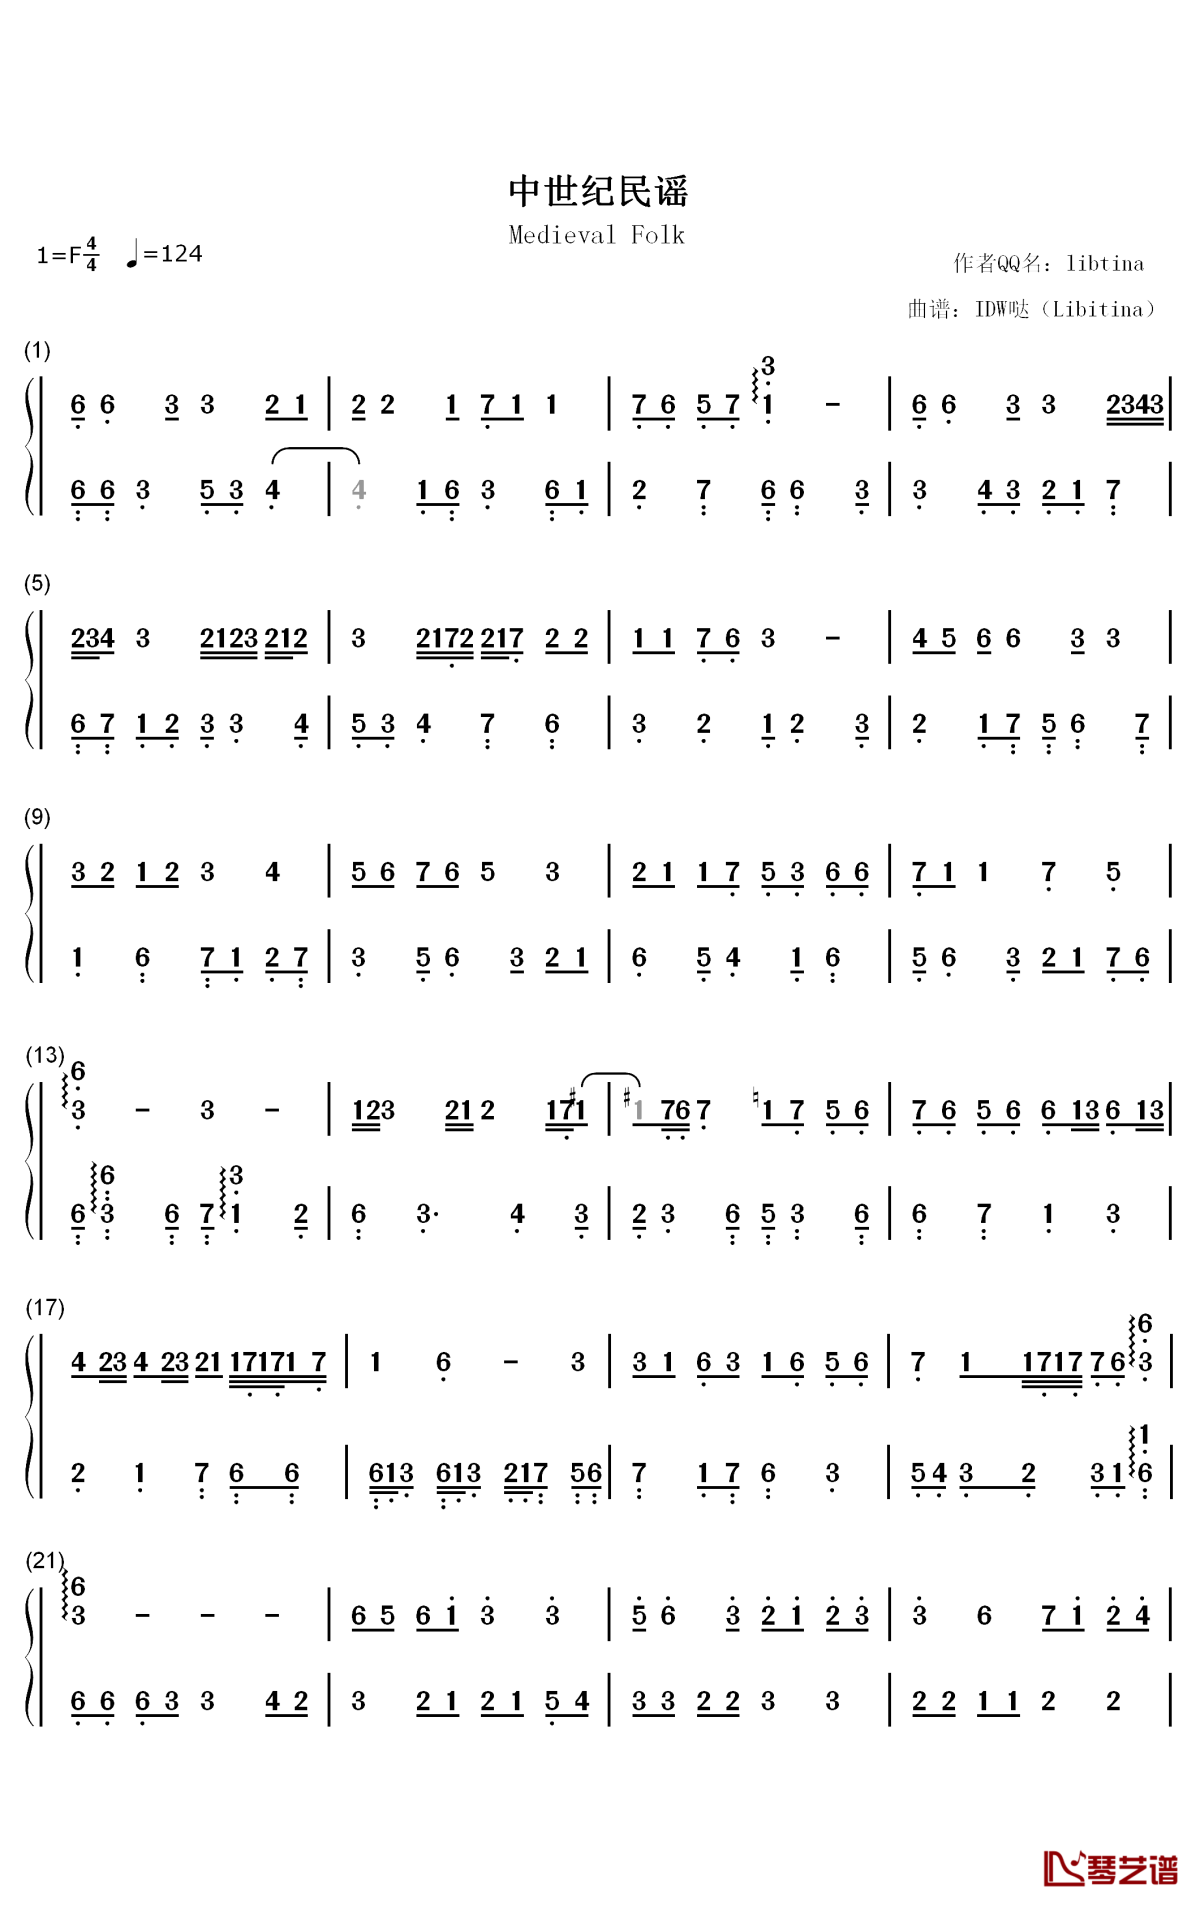 中世纪民谣钢琴简谱-数字双手-IDW哒1